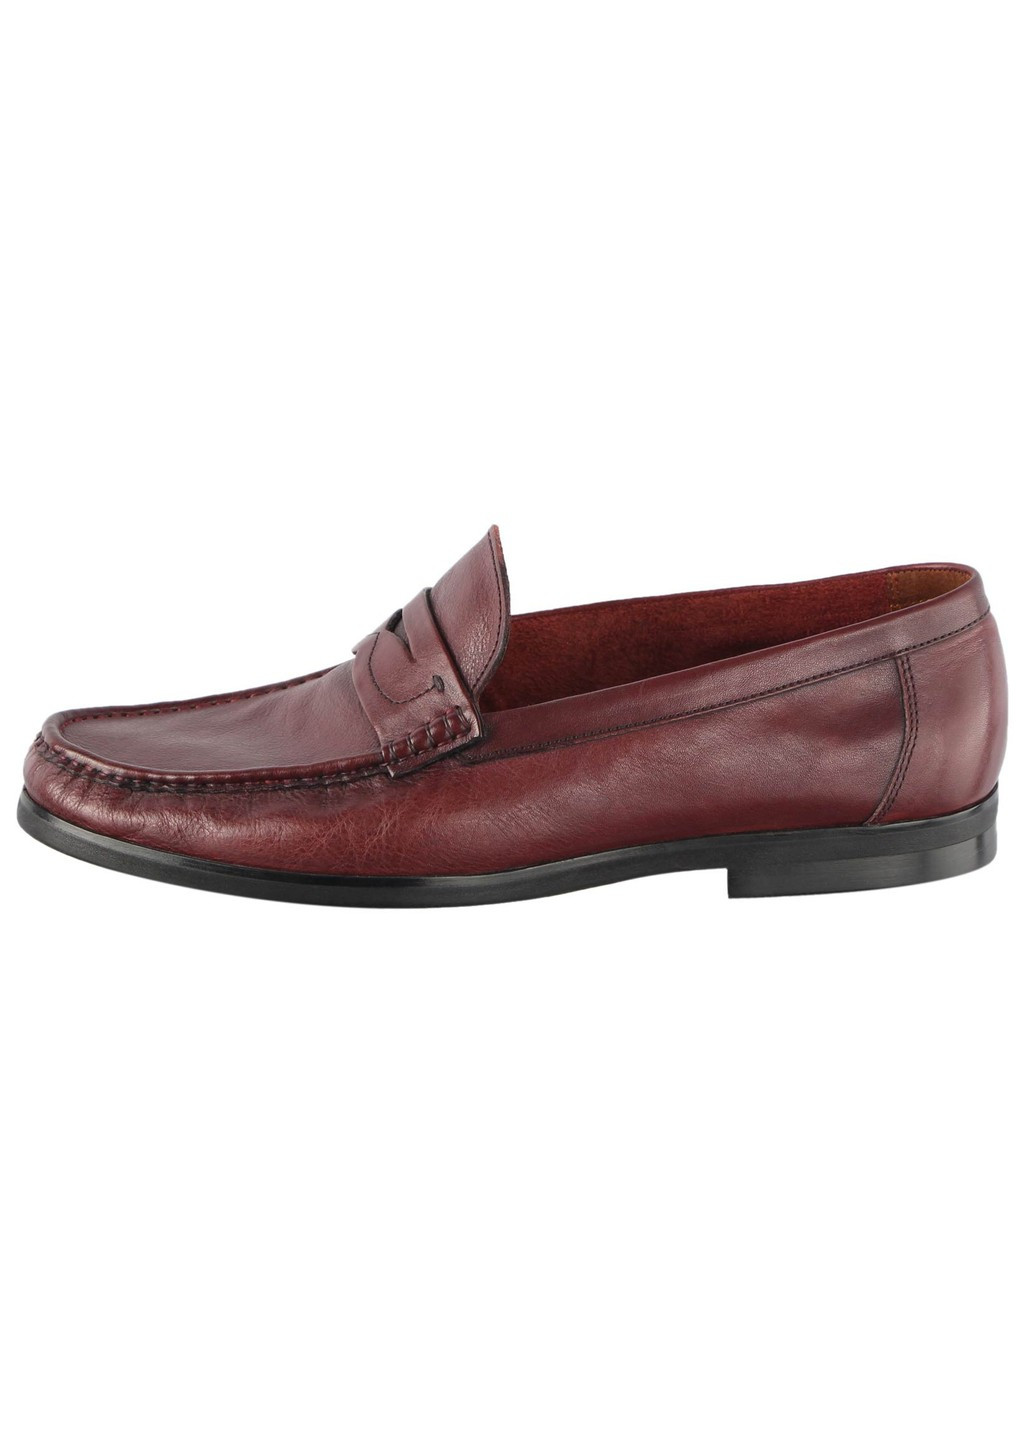 Бордовые мужские классические туфли 31831 Lido Marinozzi без шнурков